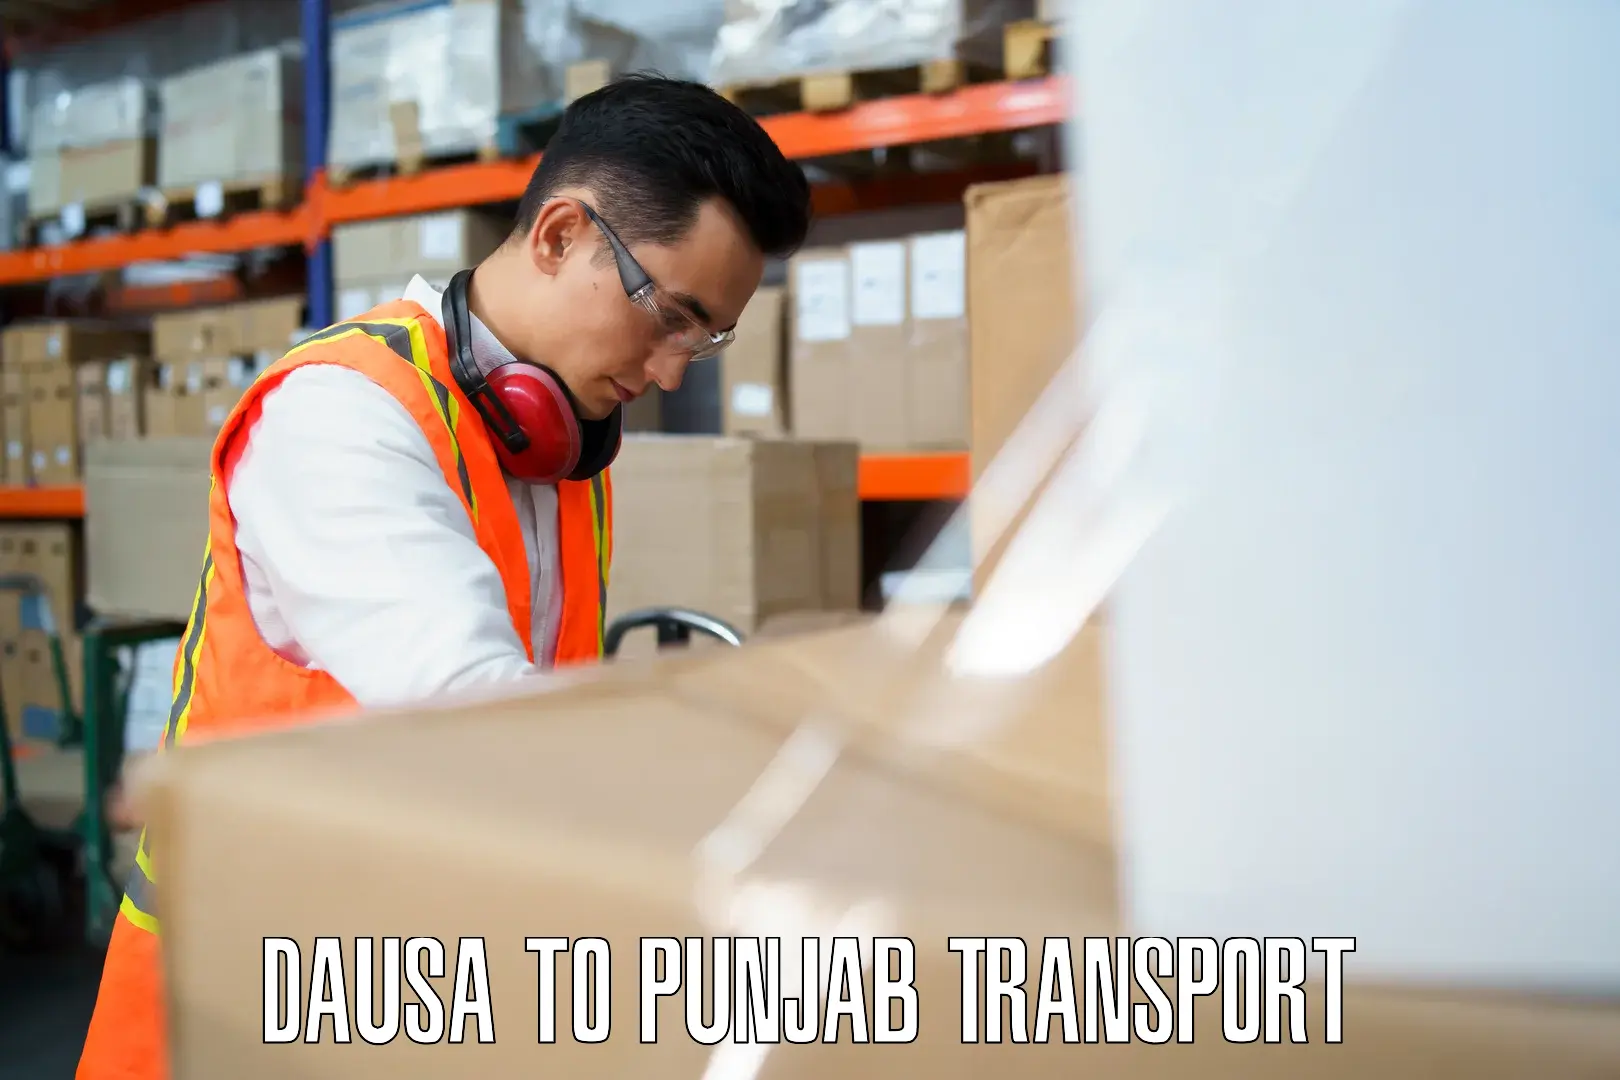 Interstate transport services Dausa to Punjab